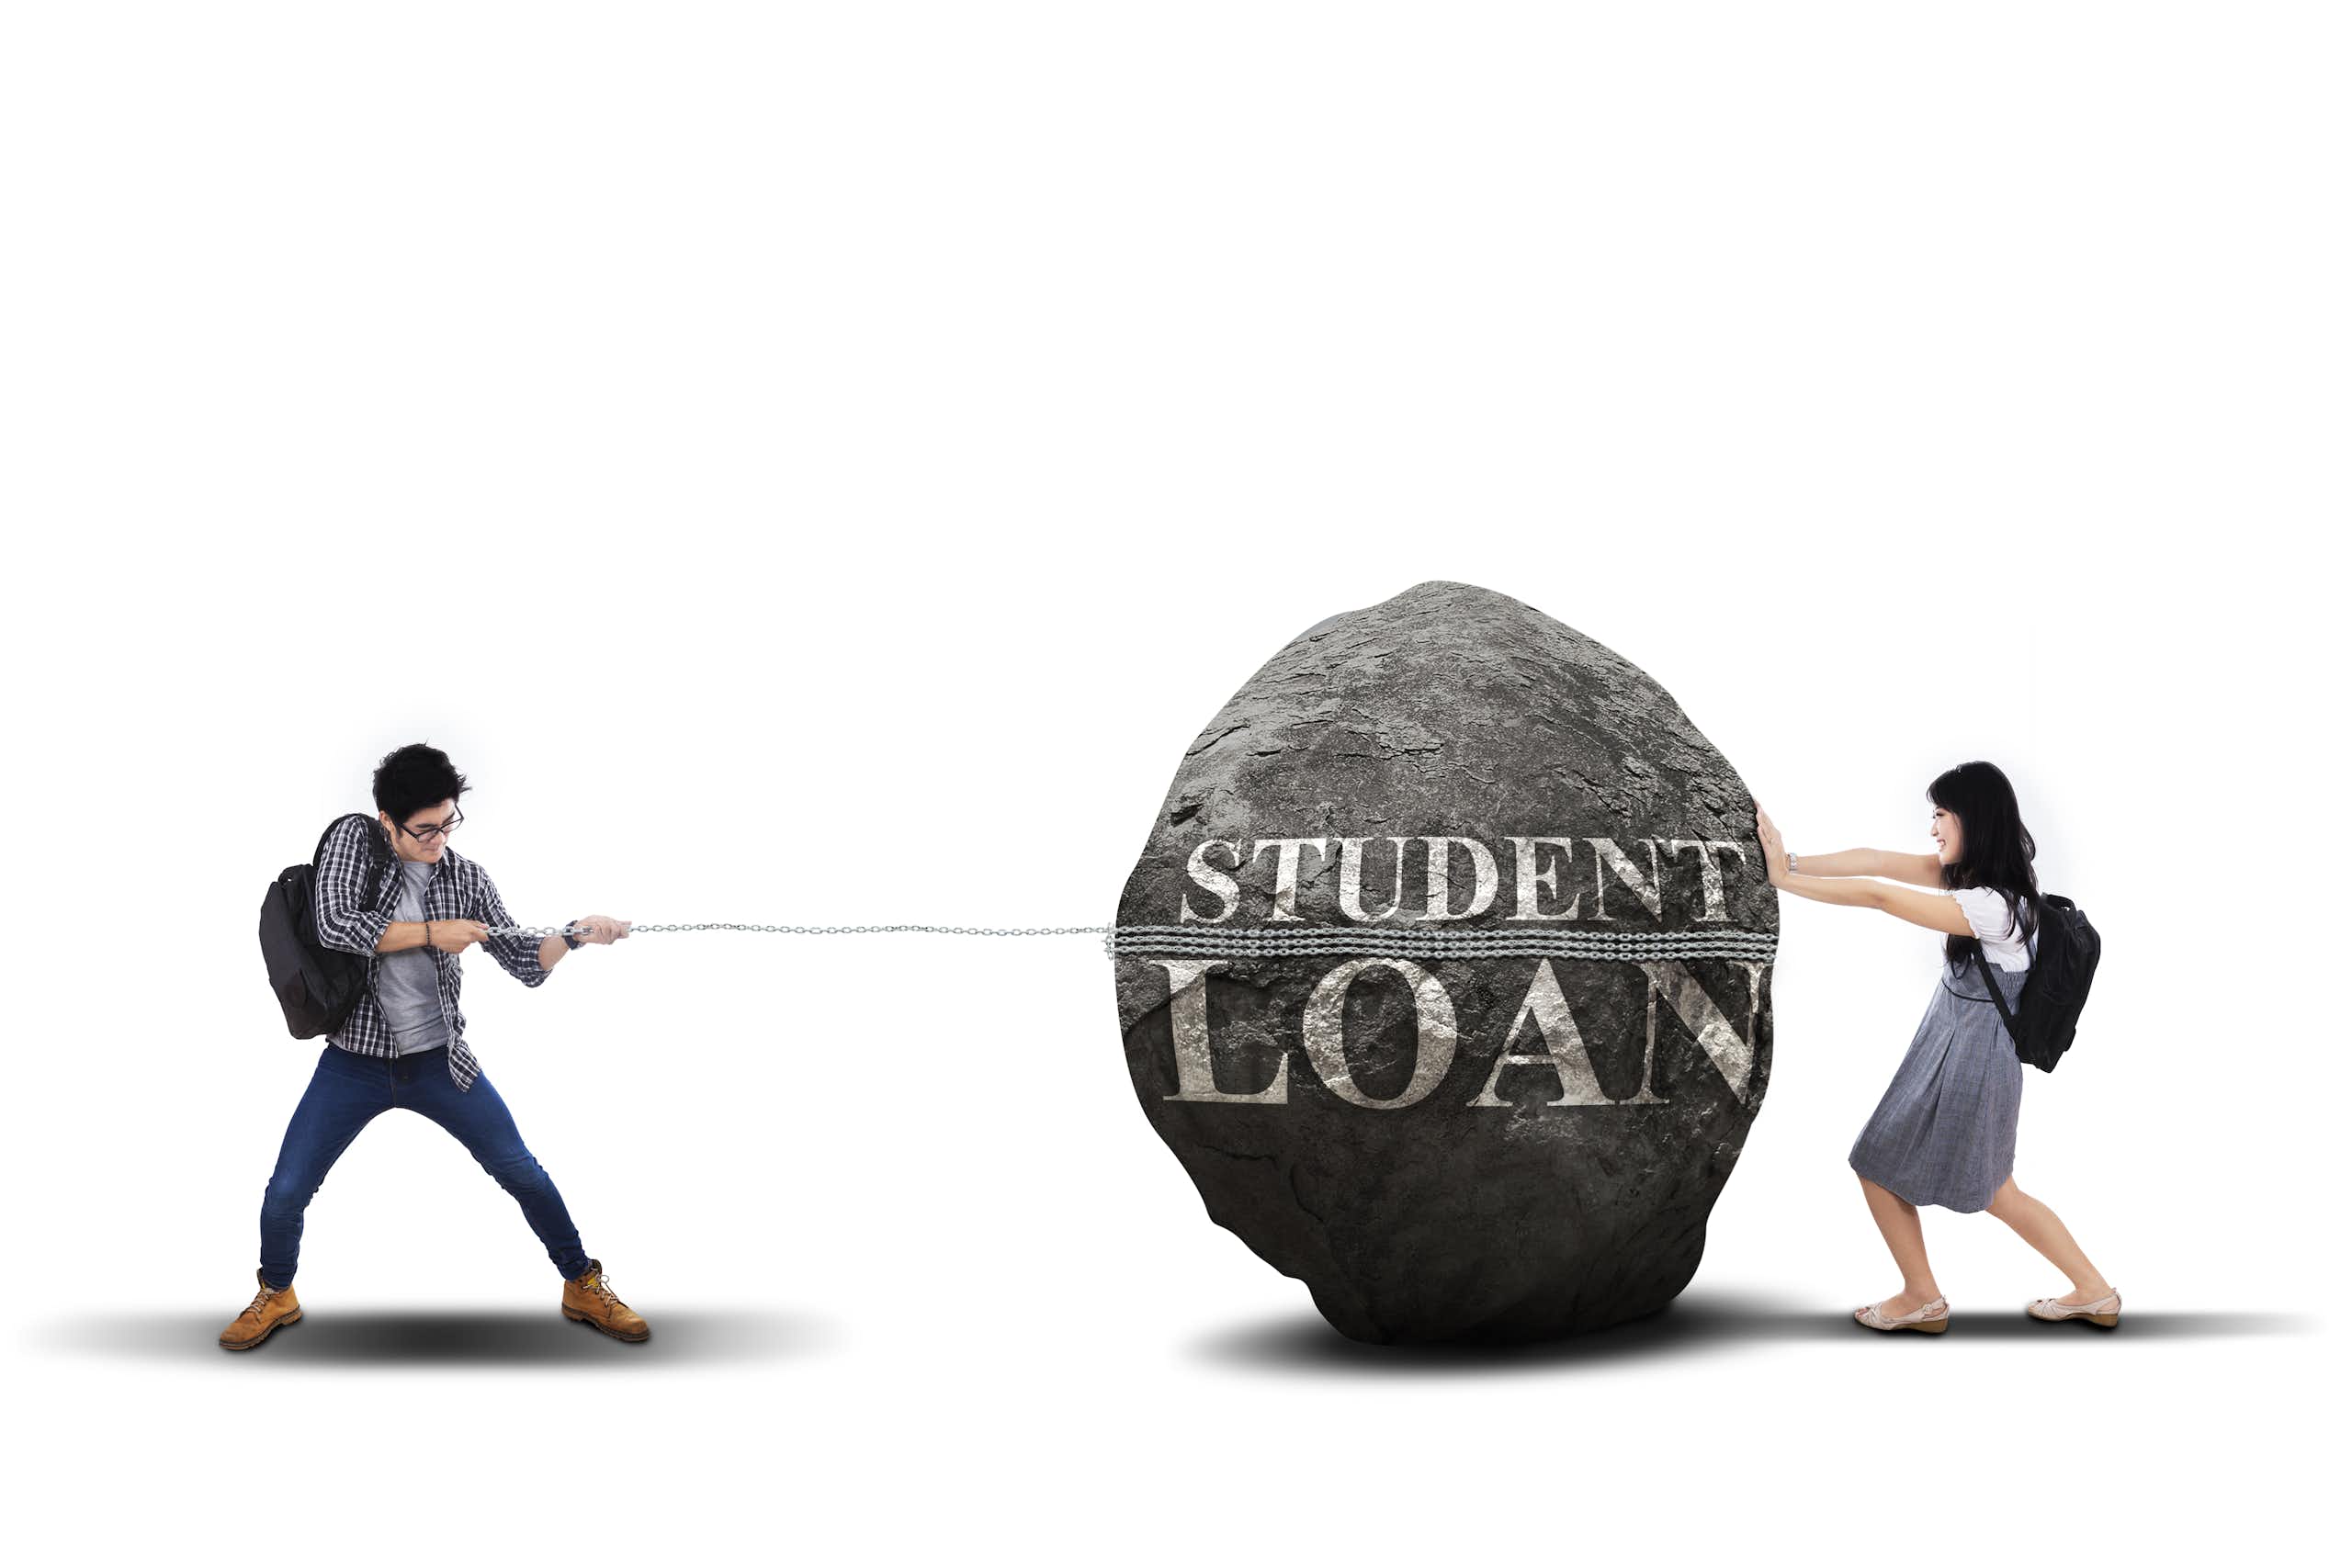 Wacana ‘student loan’ perlu dikaji ulang: terbukti berdampak negatif bagi mahasiswa dan lulusan